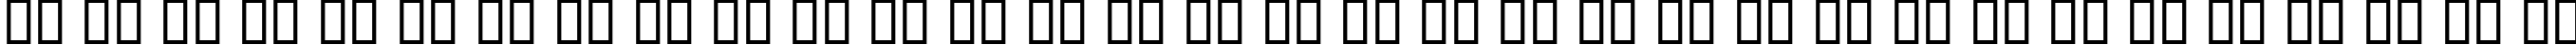 Пример написания русского алфавита шрифтом KacstDigital